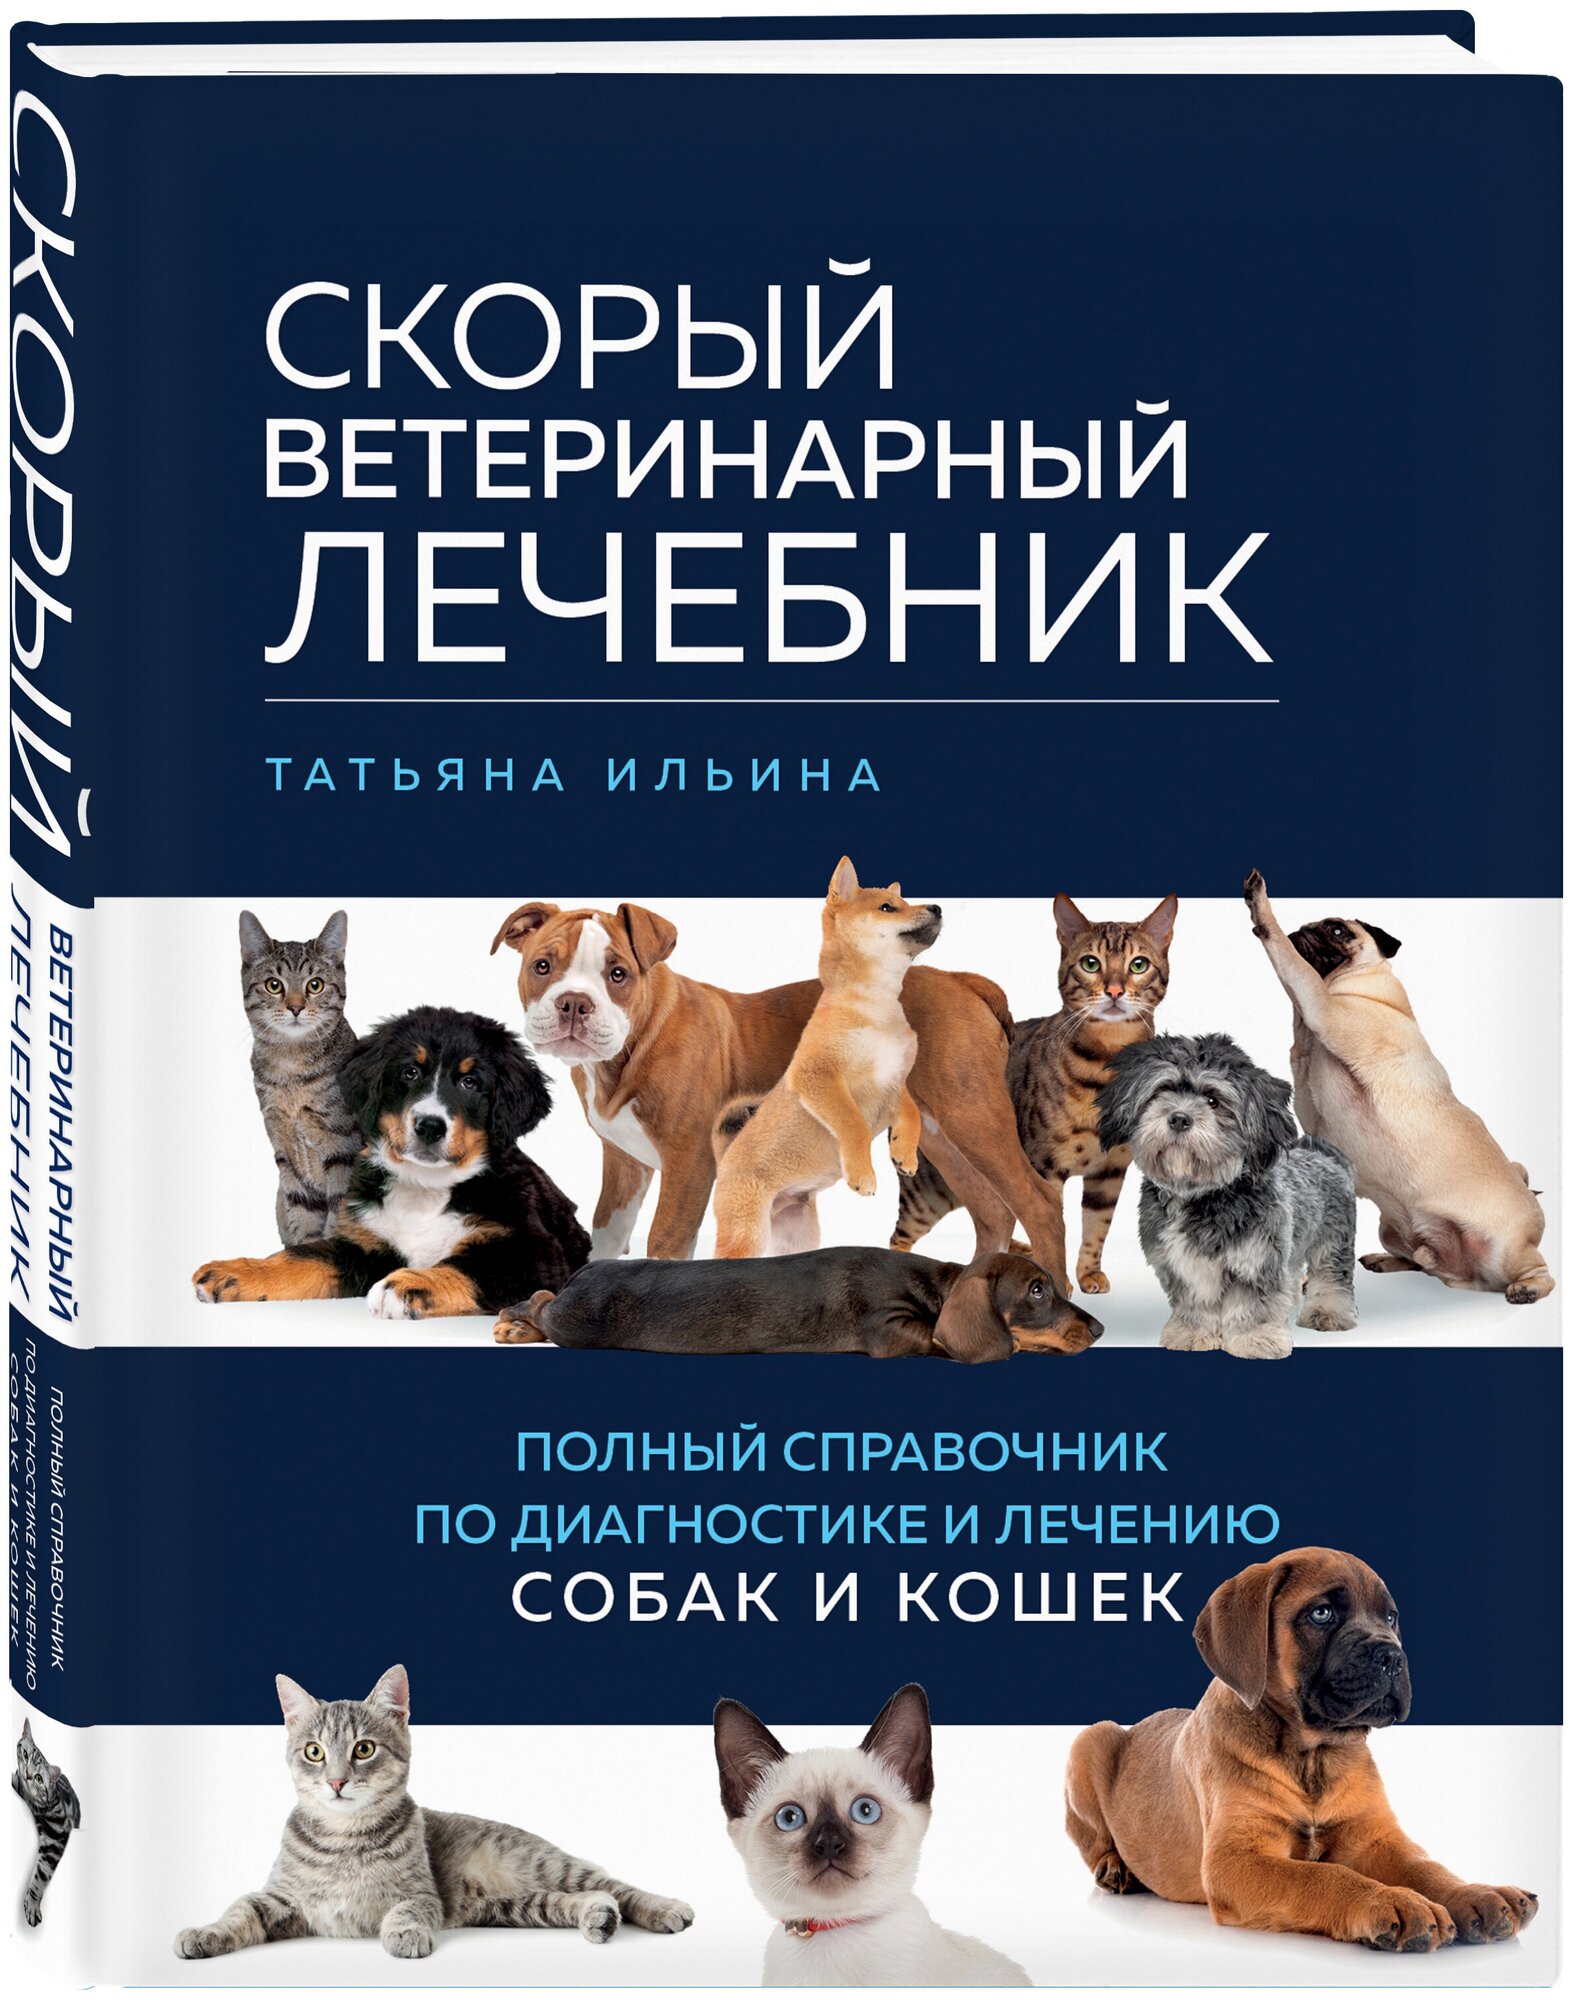 Скорый ветеринарный лечебник Справочник Ильина Татьяна 16+